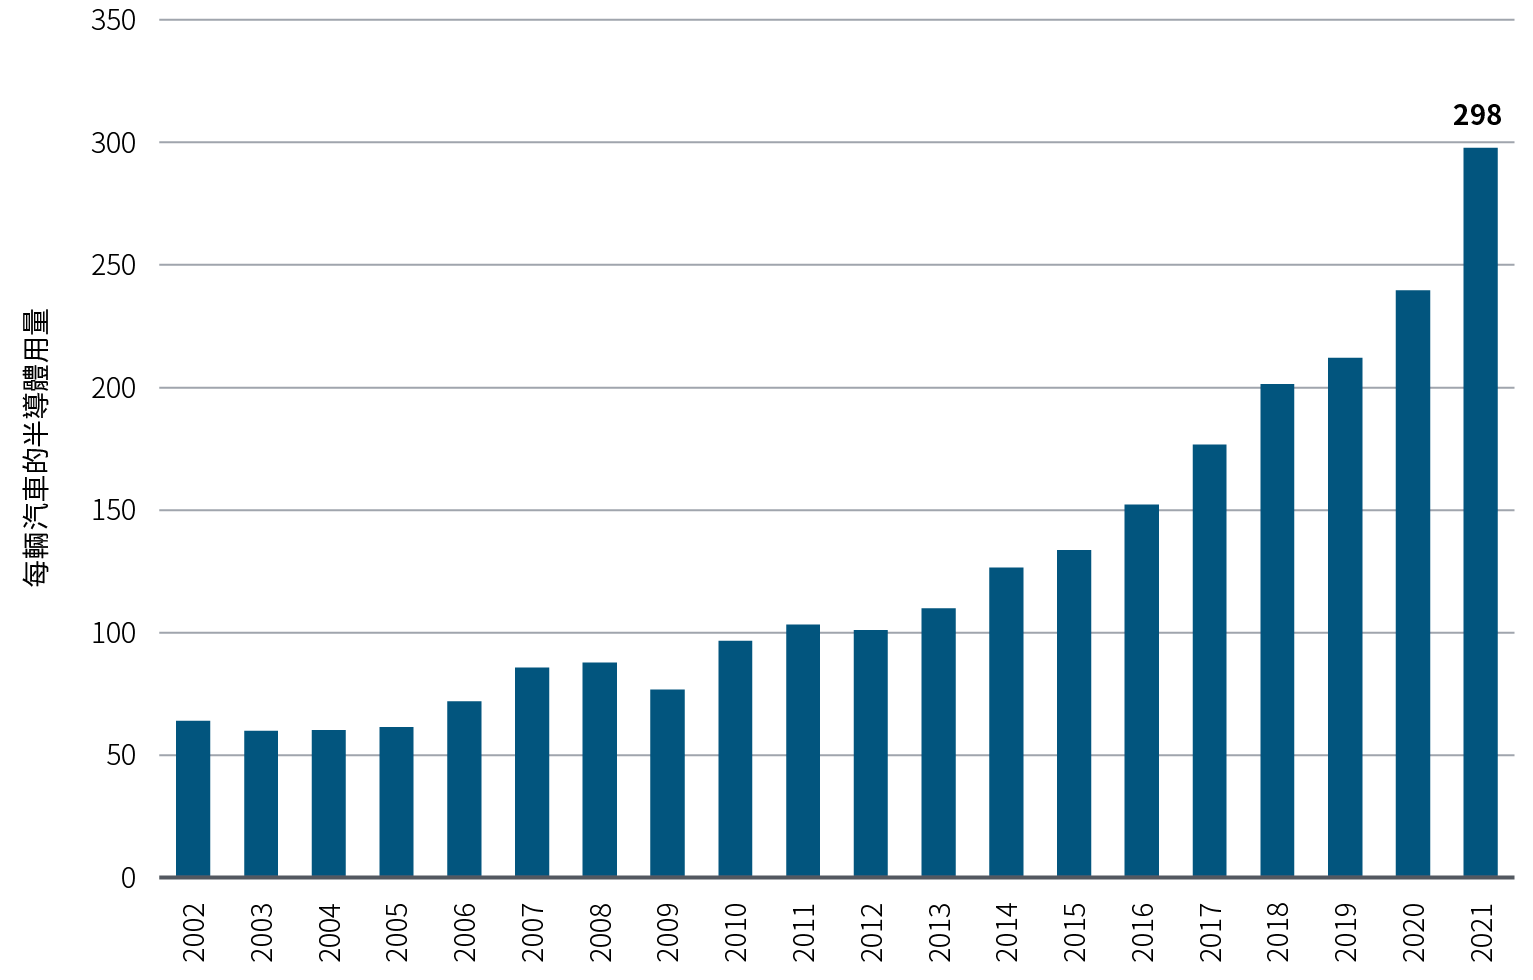 圖2以棒型圖顯示2002年至2021年每輛汽車的半導體用量的年度平均值。期內的數字由64升至298，並在2020年至2021年錄得最大的一年升幅。單位反映汽車微處理器及汽車模擬半導體的全球付運量，除以全球輕型汽車產量。2021 年數據為首三季的年率化數據。